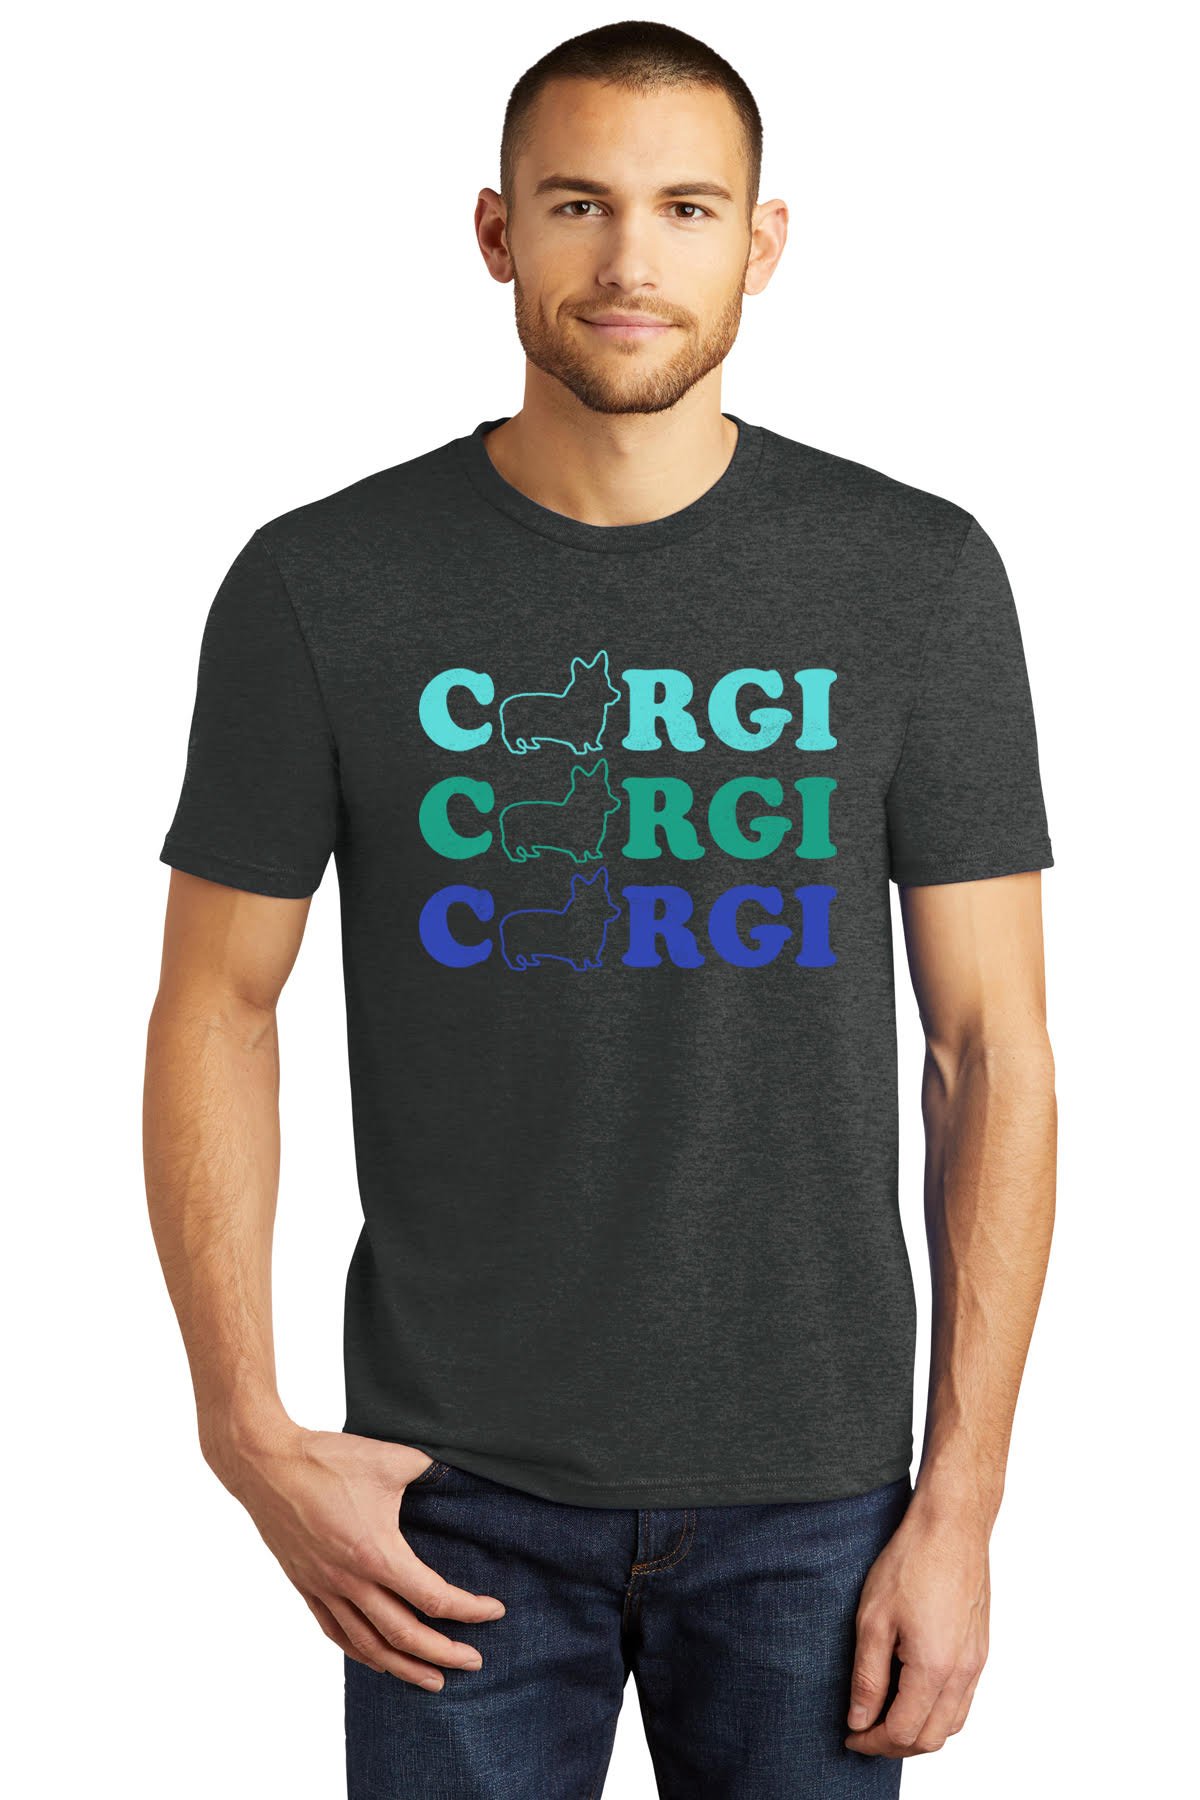 Depression Patent følelse C3 Mens T-Shirt — So Cal Corgi Nation